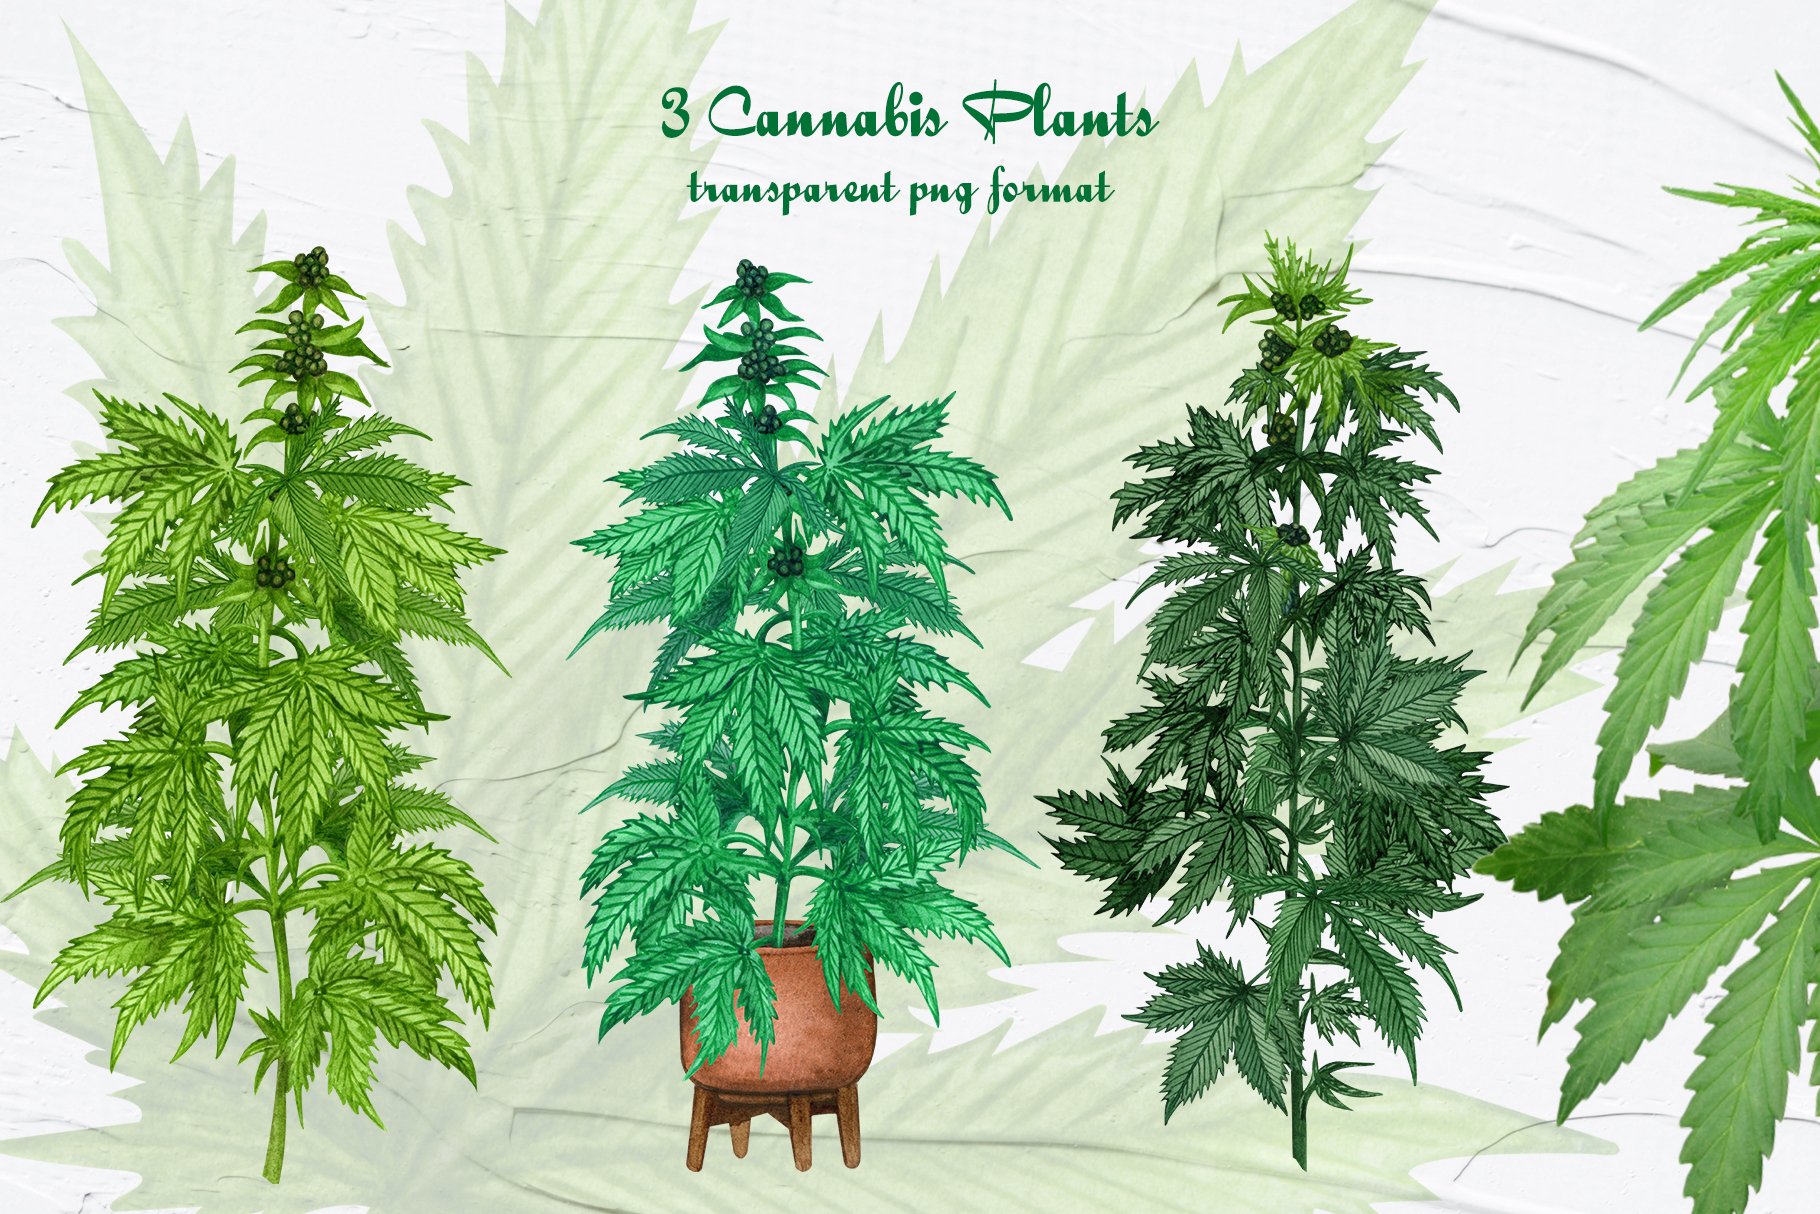 3 cannabis plants transparent png format.